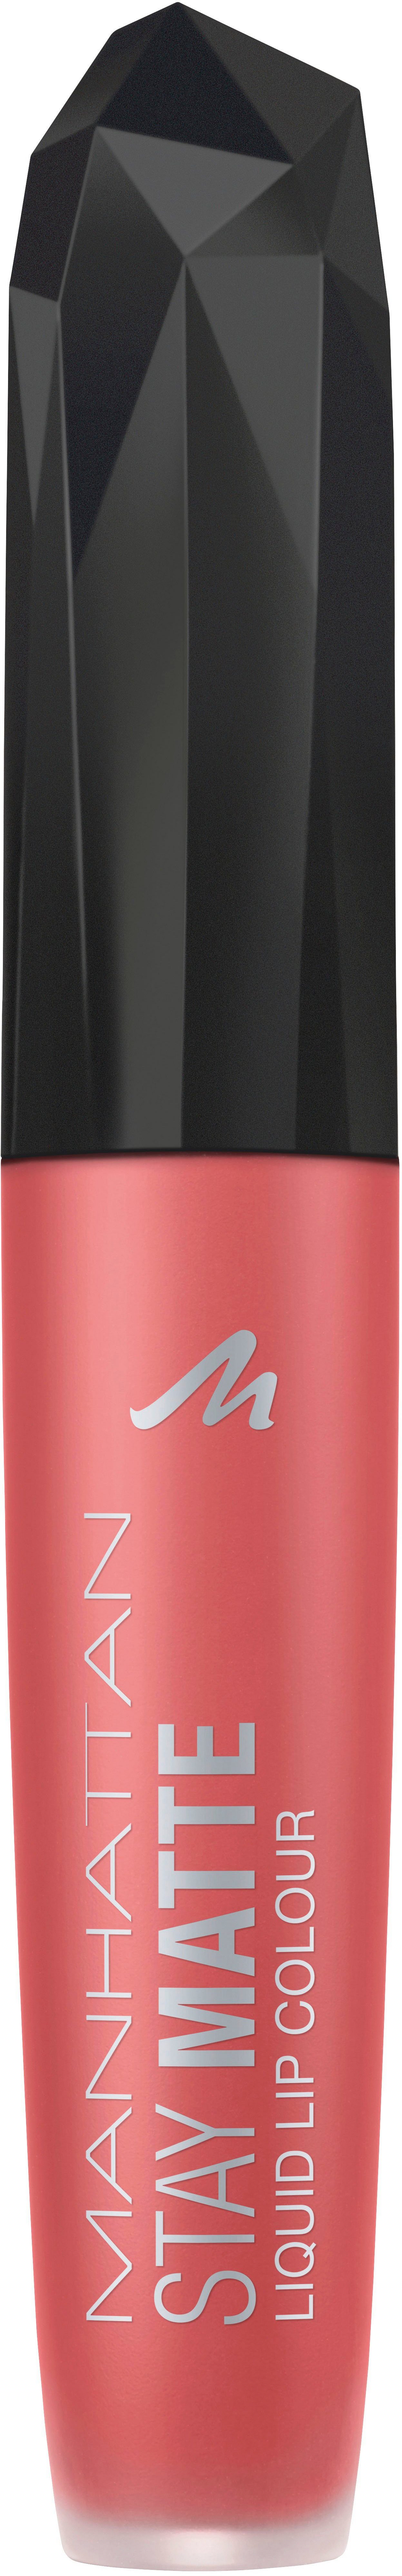 MANHATTAN Lippenstift »Stay Matte Liquid Lip Colour« online kaufen | OTTO